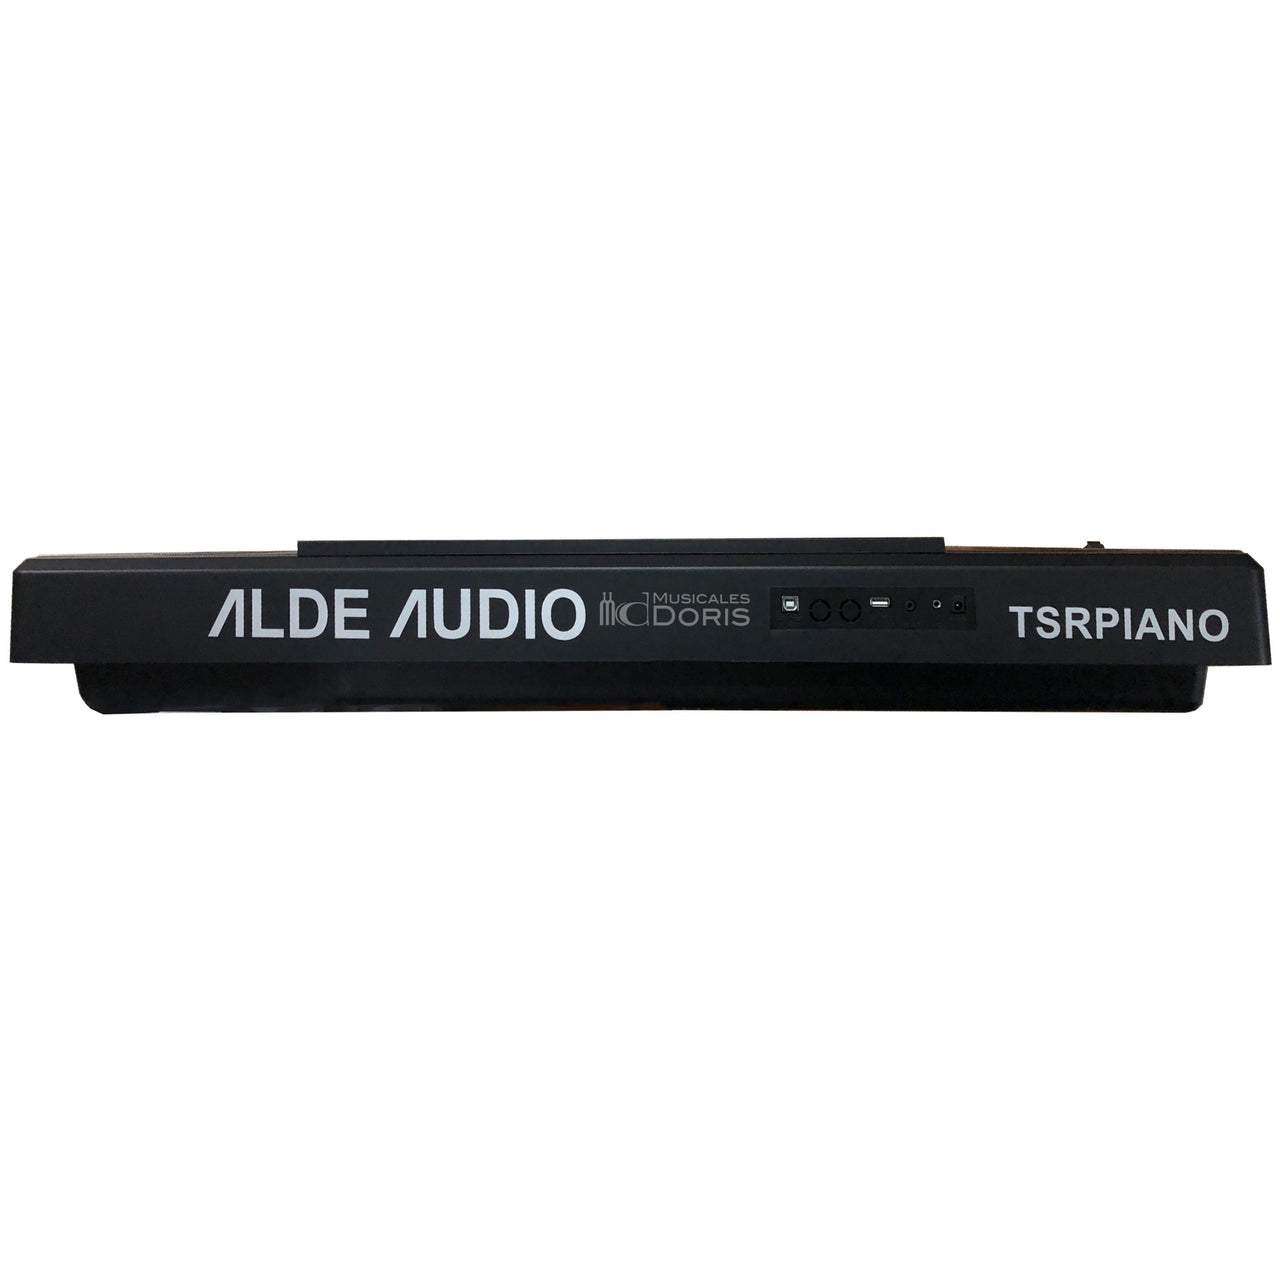 Teclado Alde Audio 61 Teclas C/sensibilidad 422 Tonos, Tsrpiano